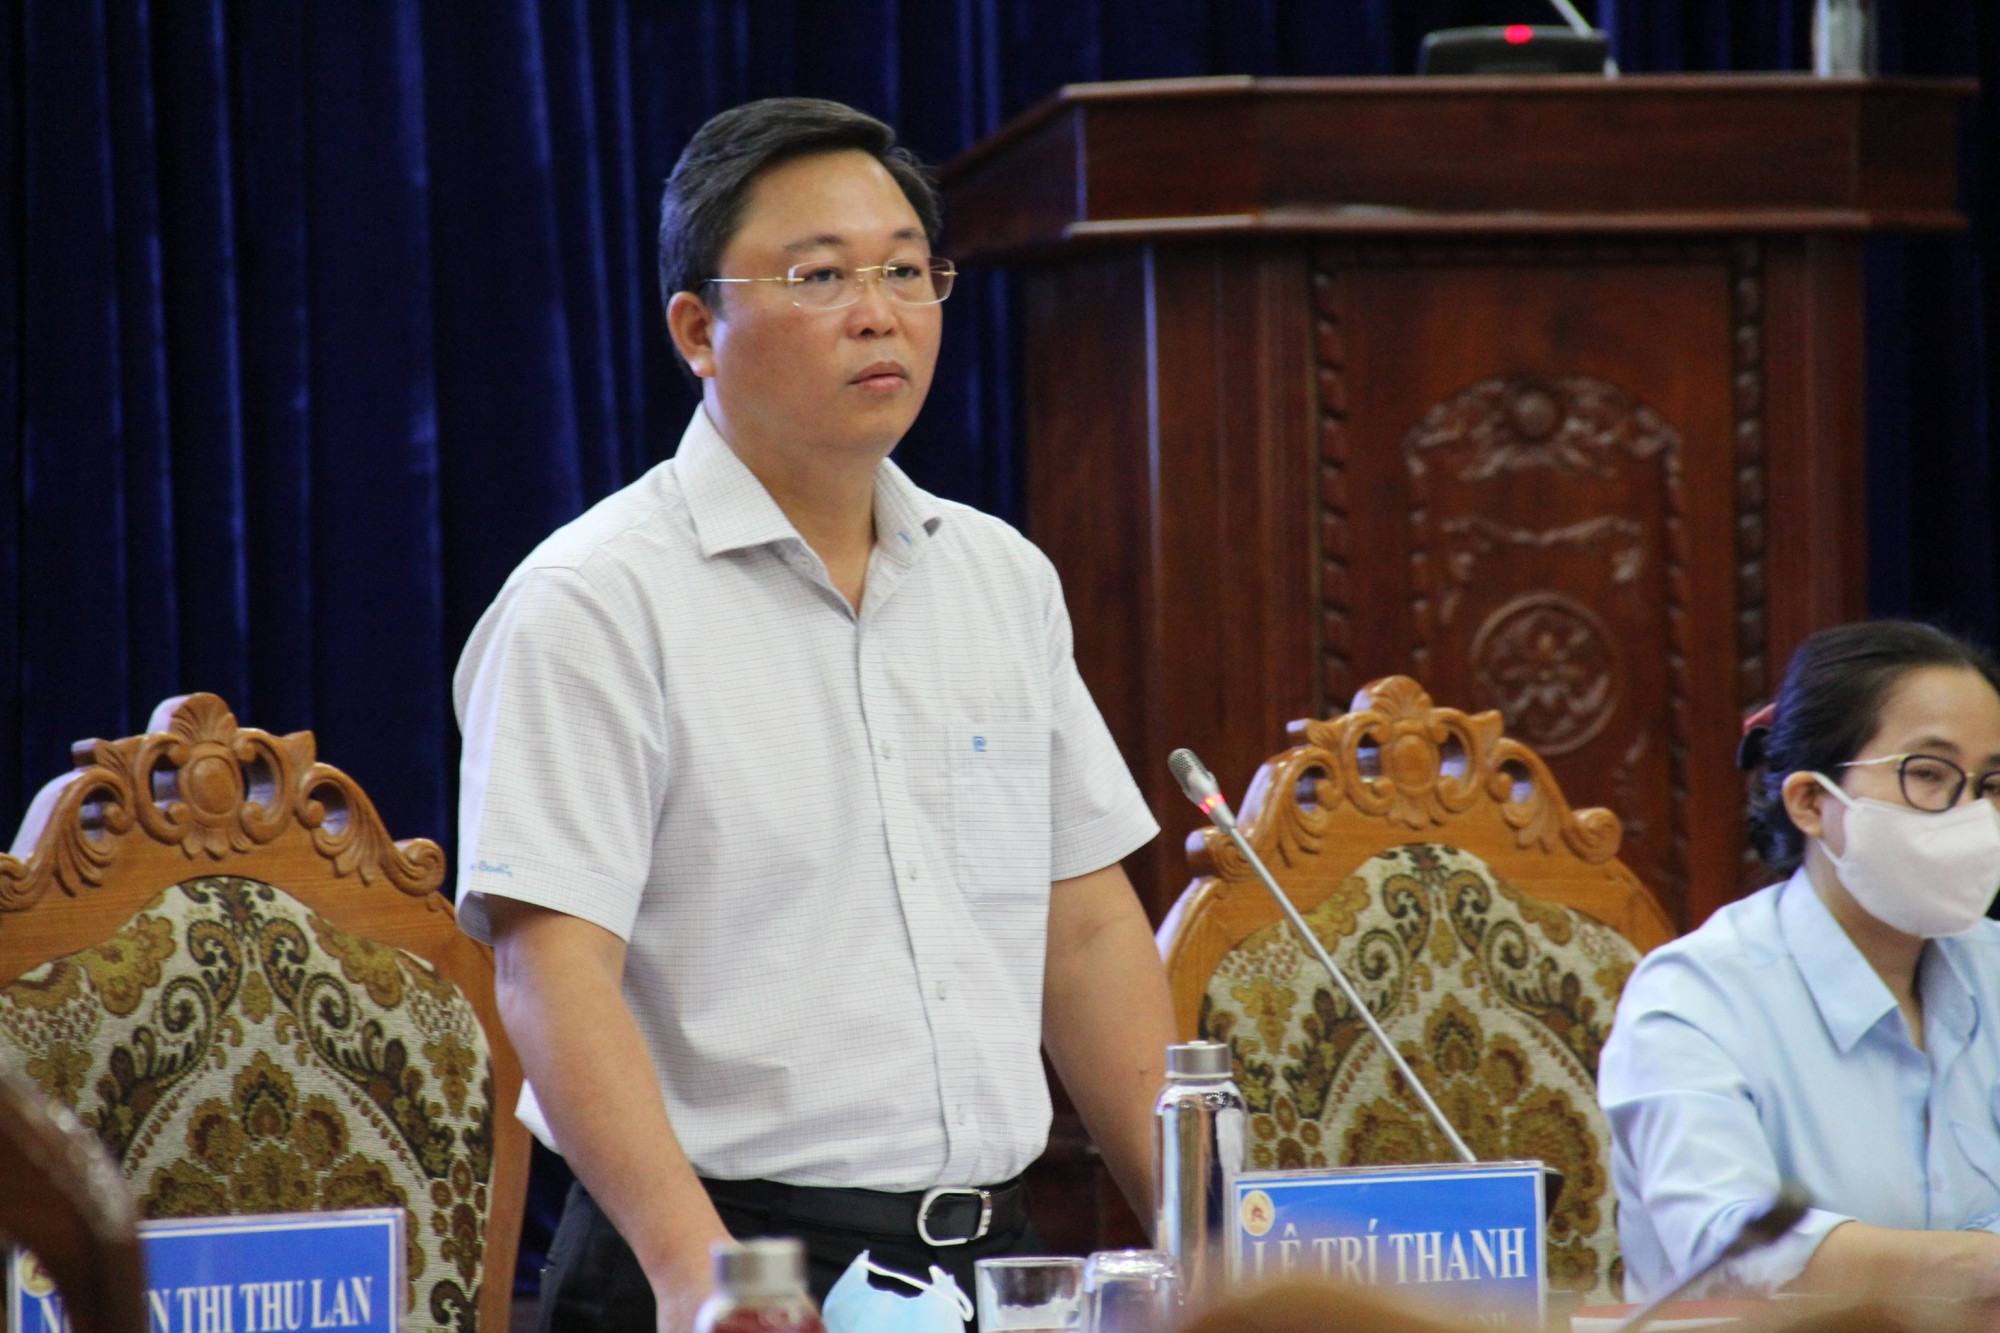 Theo ông Lê Trí Thanh - Chủ tịch UBND tỉnh Quảng Nam, kết quả này là sự cố gắng của cả hệ thống chính trị, nhằm đat đươc kết quả cao nhất trong việc tổ chức bầu cửu